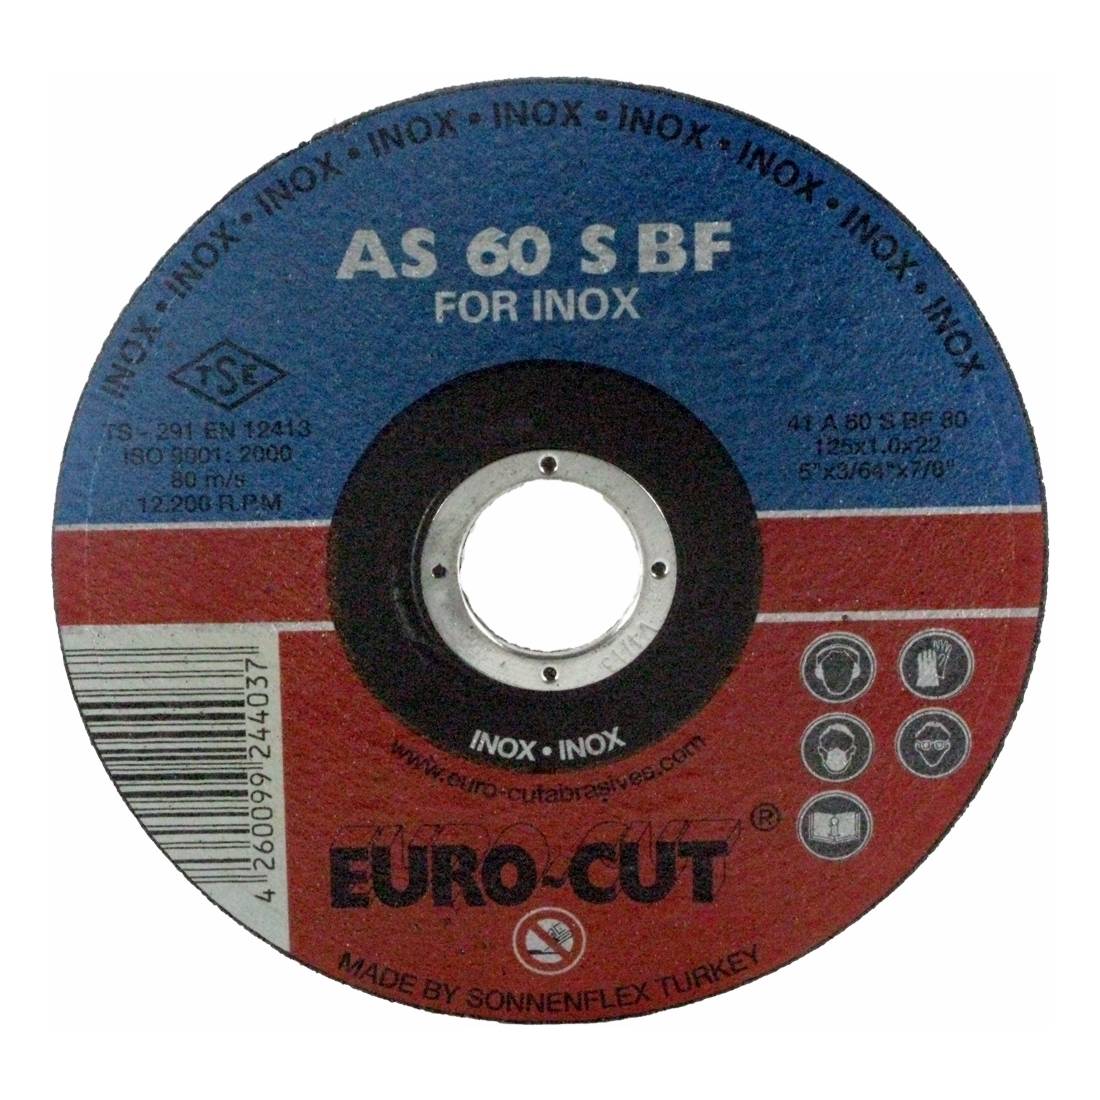 Edelstahl-Trennscheibe 'Euro Cut' 115 x 22,2 x 1,0 mm, gerade